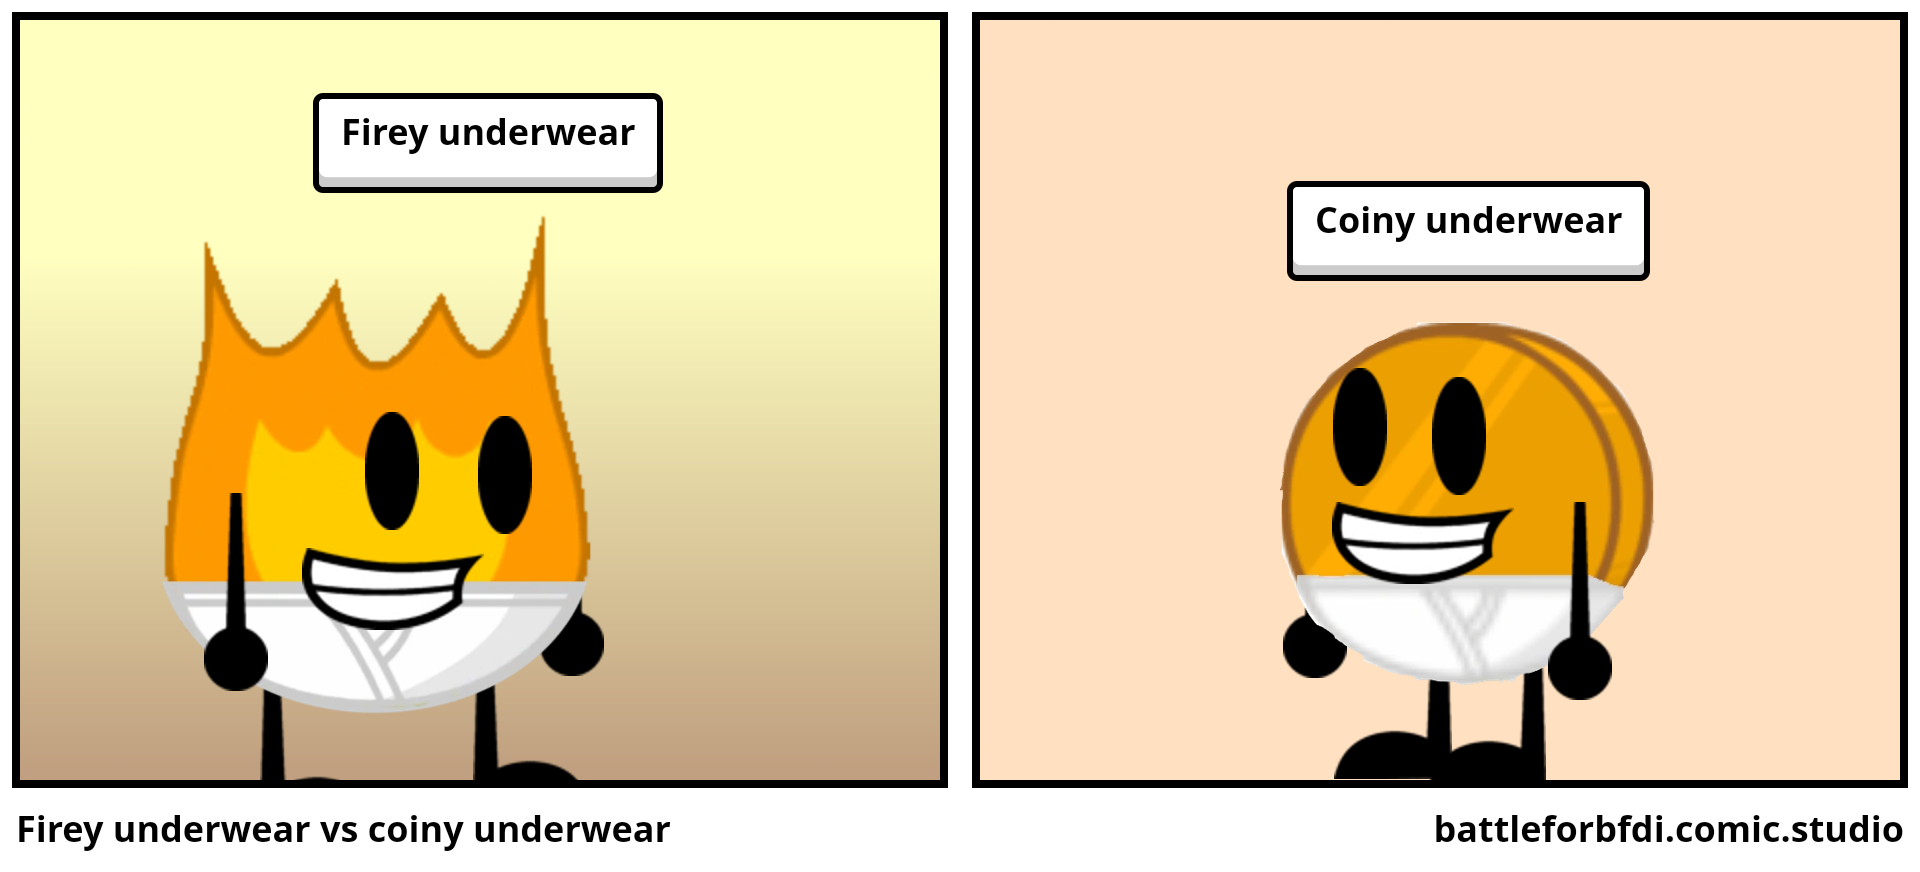 Firey underwear vs coiny underwear